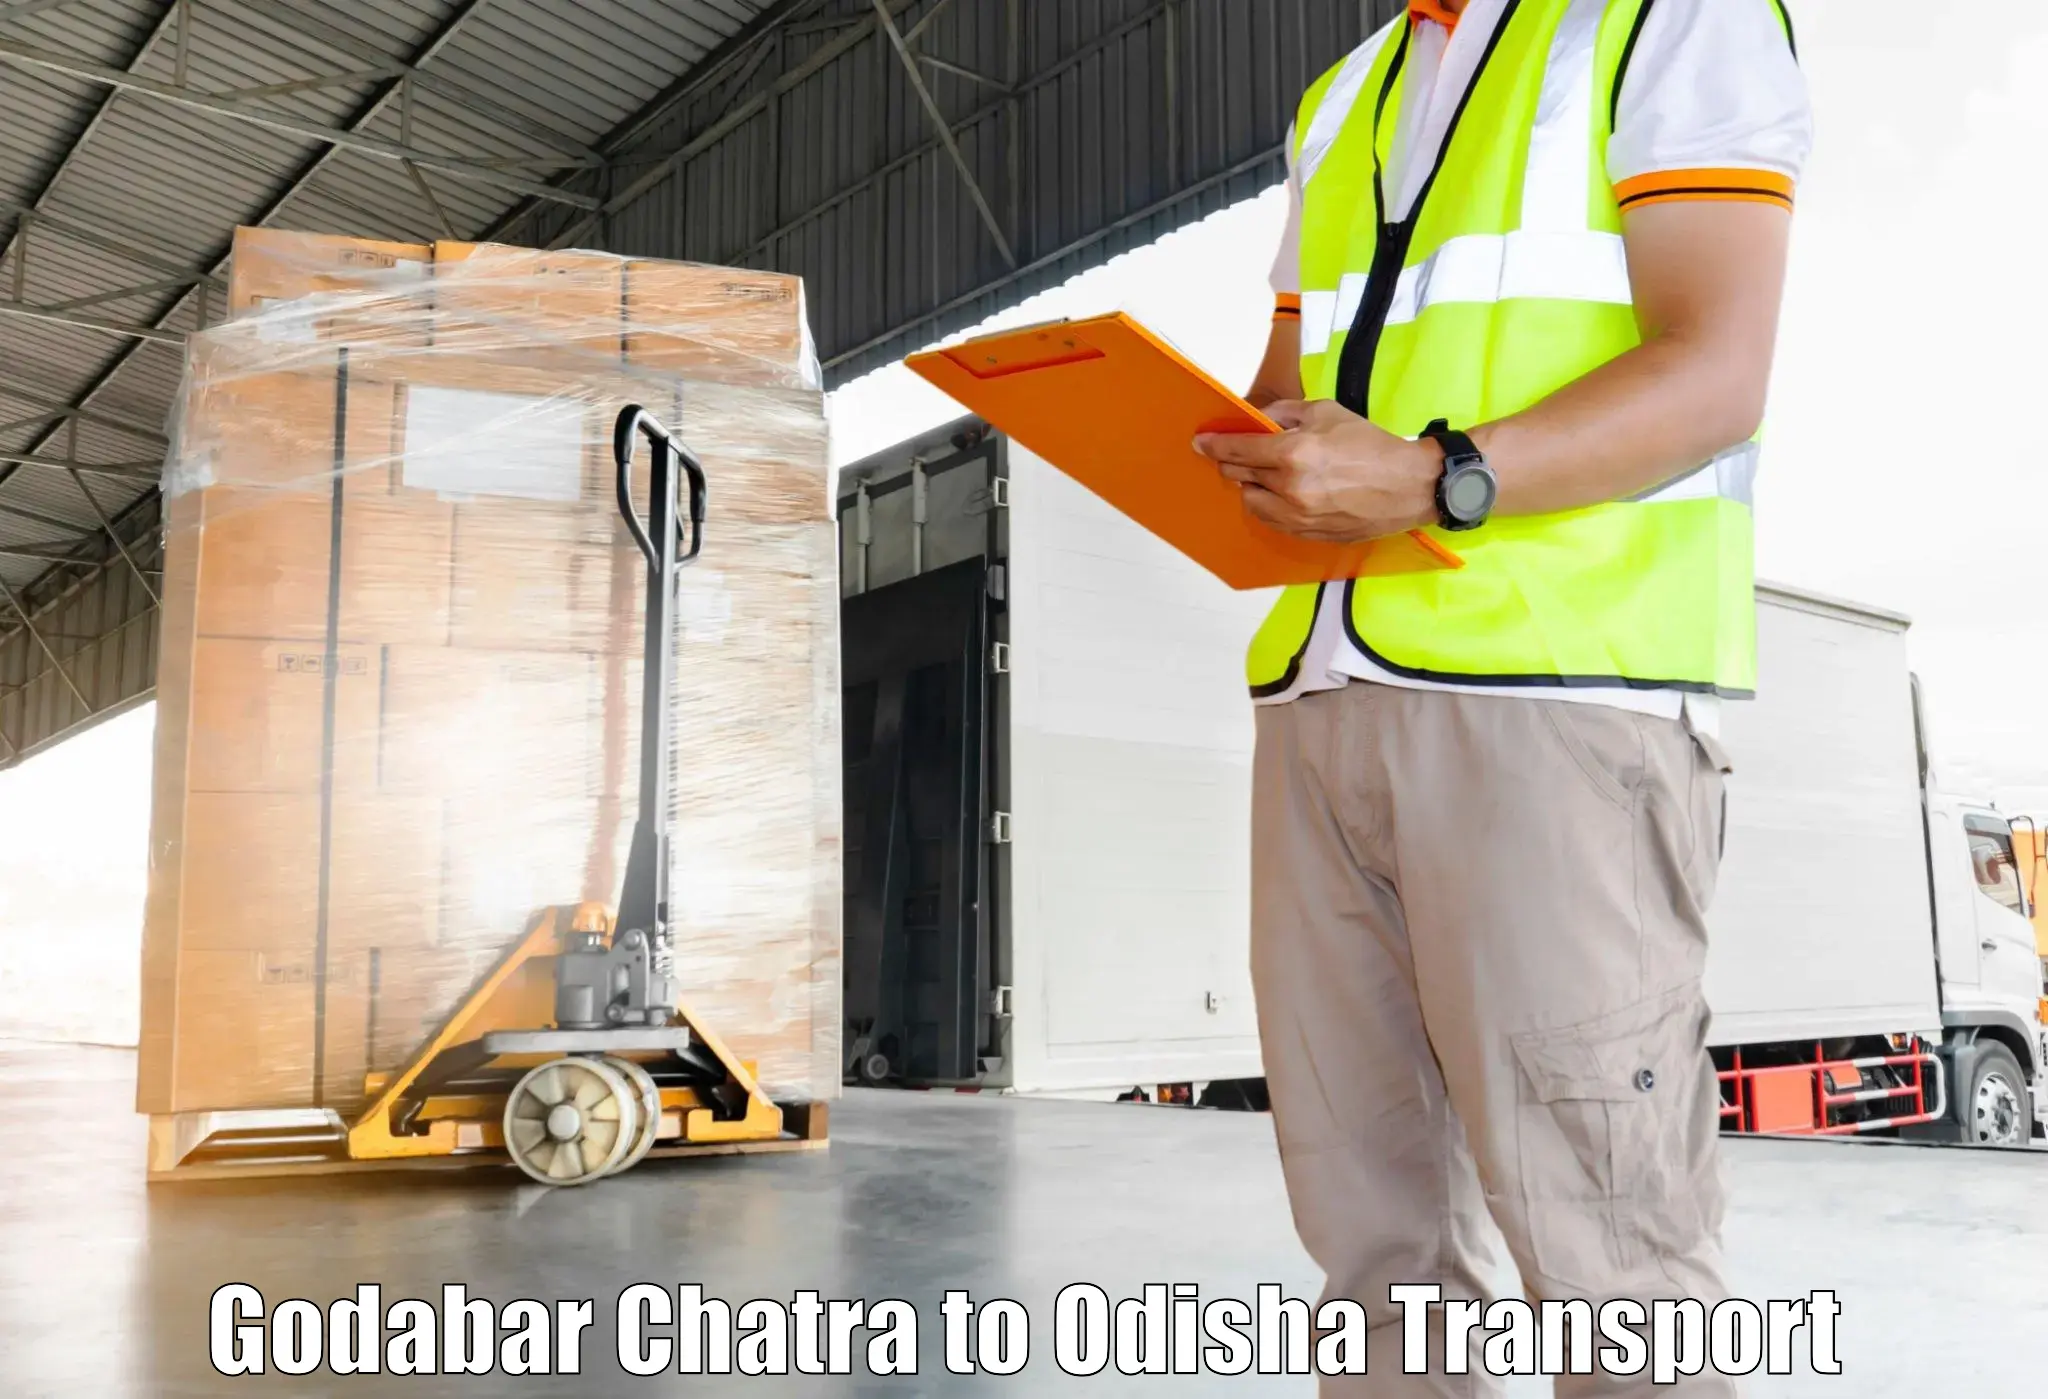 International cargo transportation services in Godabar Chatra to Konark